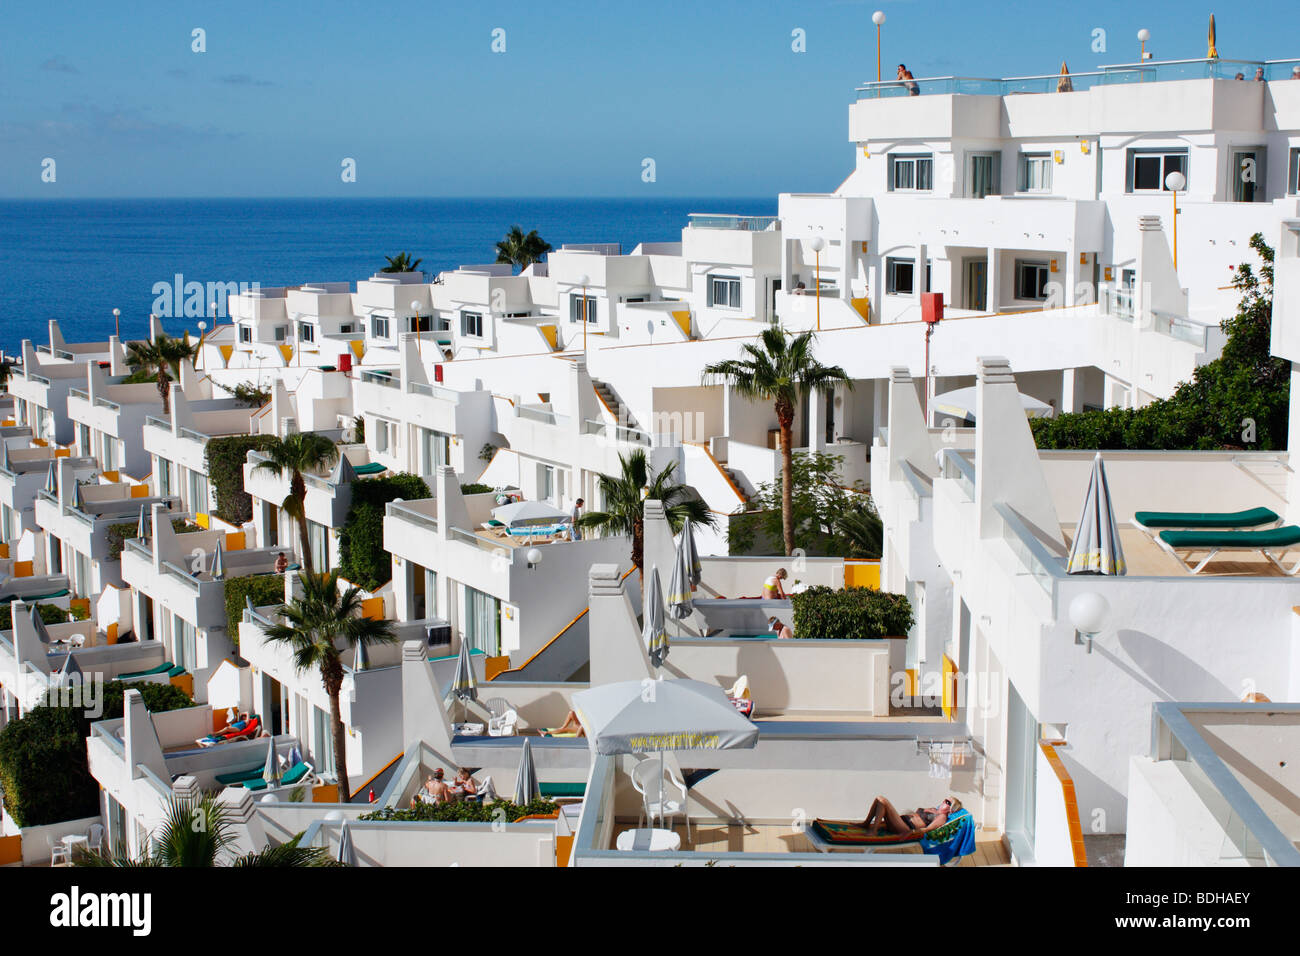 Ferienwohnungen in Puerto Rico auf Gran Canaria auf den Kanarischen Inseln  Stockfotografie - Alamy